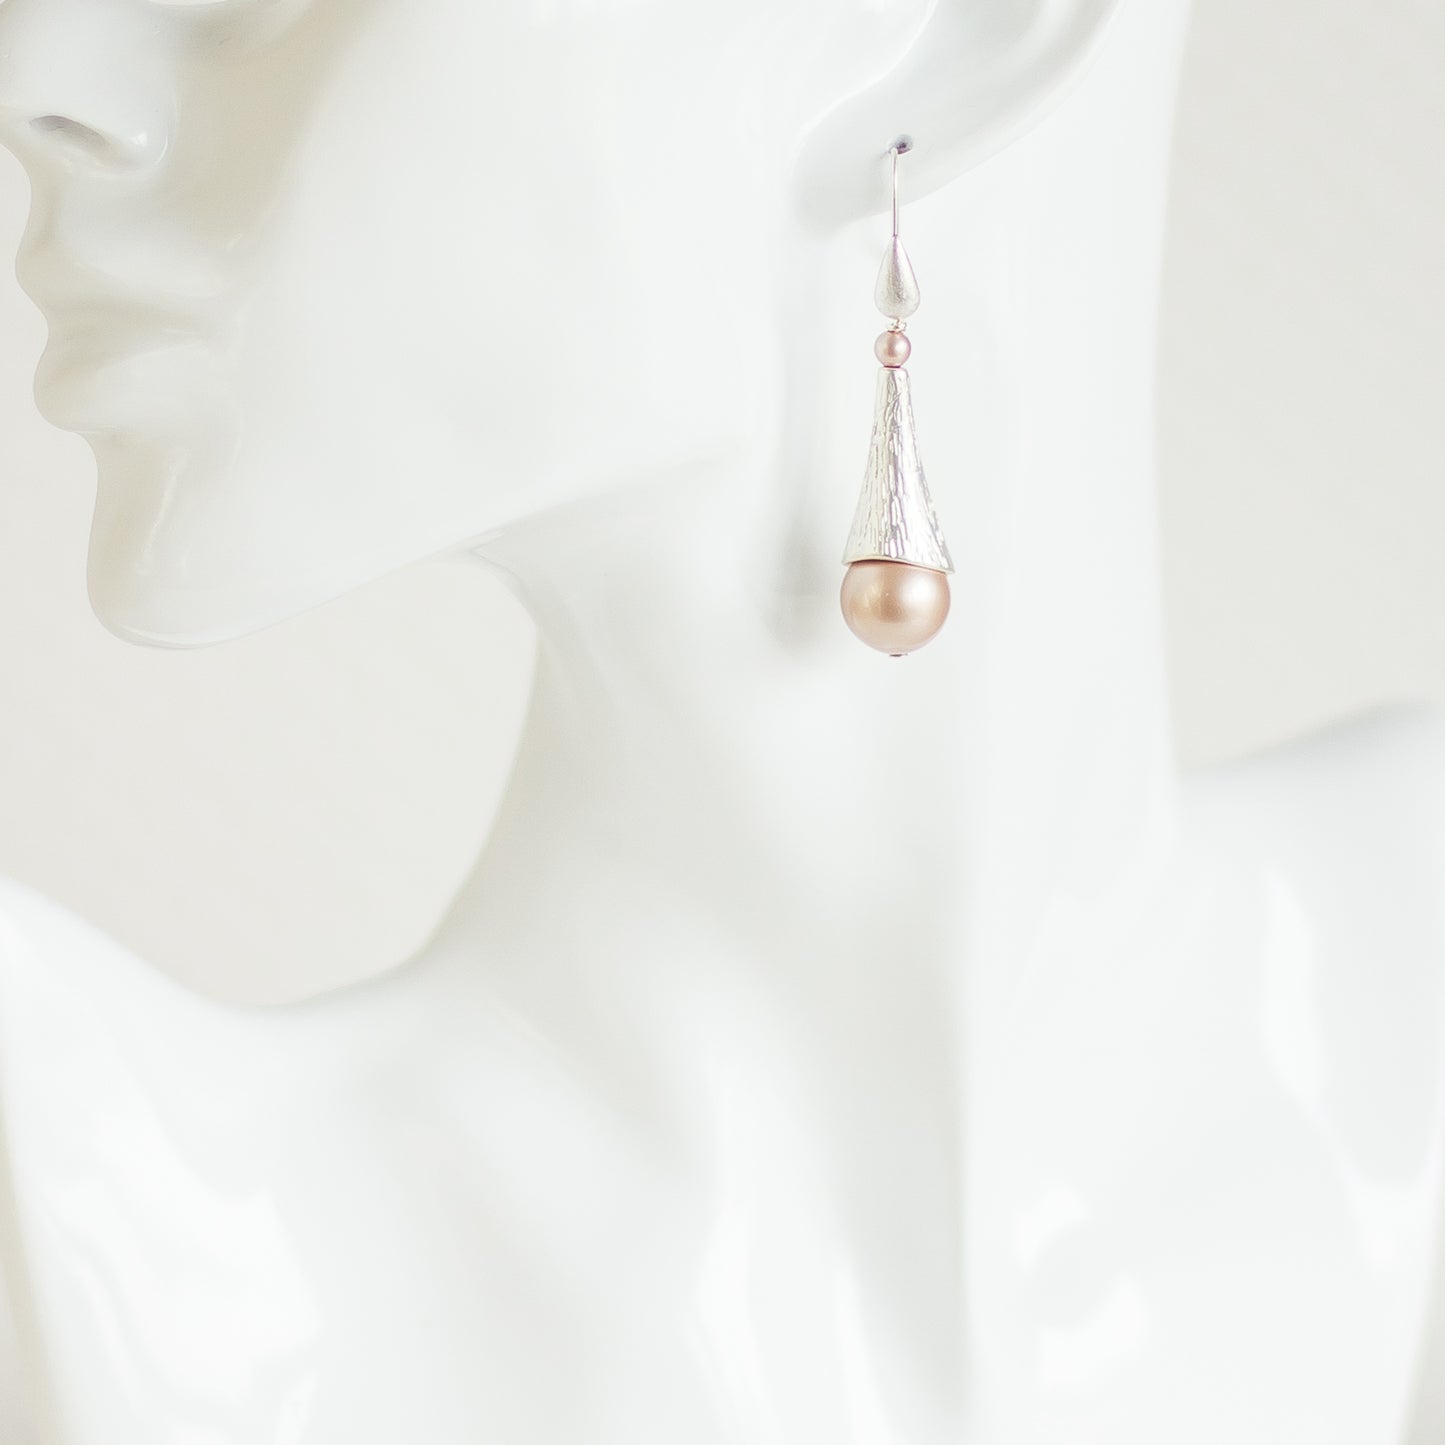 Blush/Silver earrings.  Dangle drop earrings Powder Pearl Swarovski earrings.  Bridal pearl jewelry. Handmade accessories. Woman fashion accessories. Ear wire earrings. Wedding jewelry.